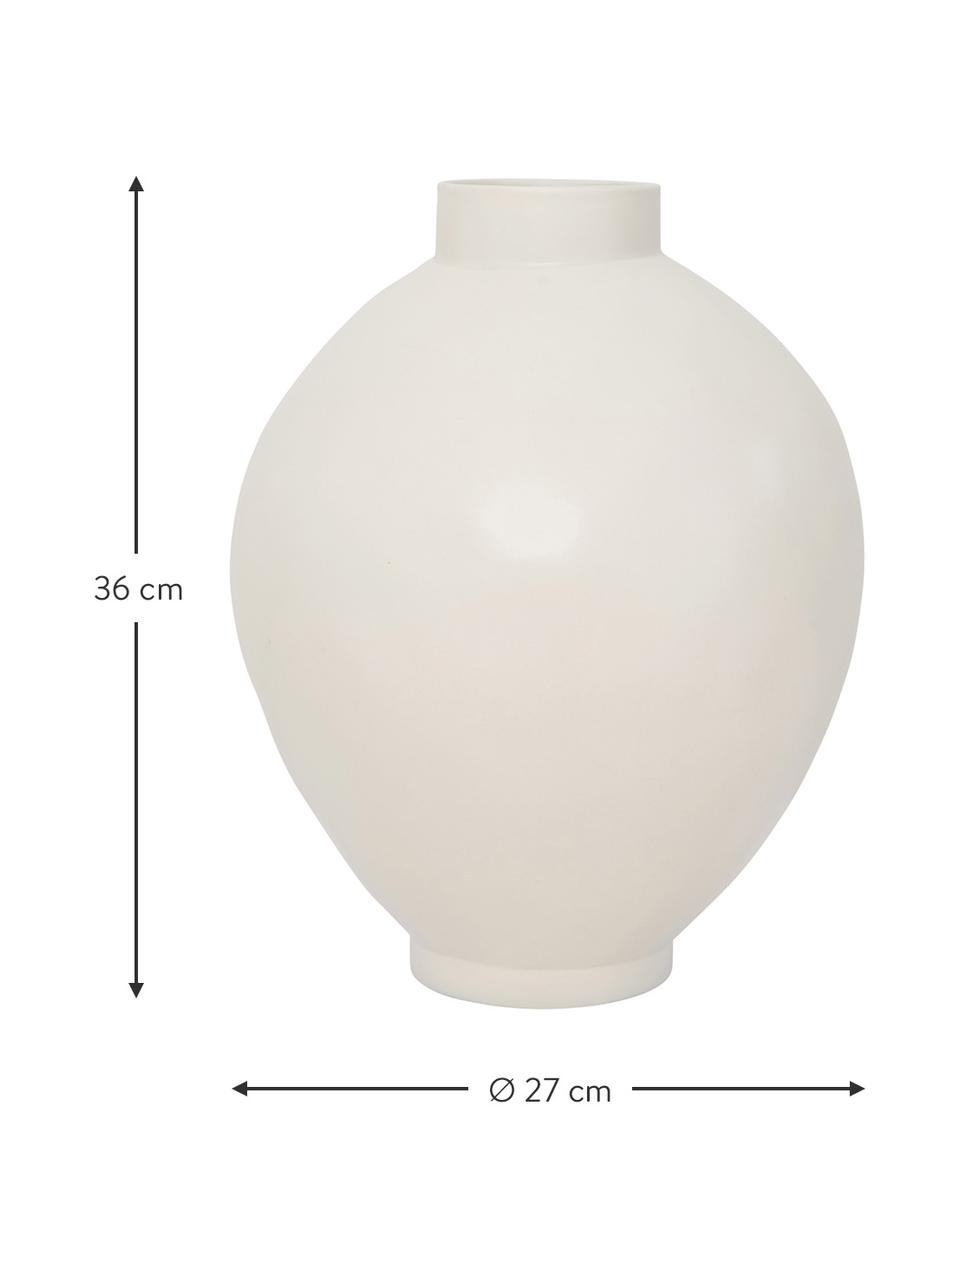 Handgefertigte Steingut-Vase Hush in Weiß, Steingut, Weiß, matt, Ø 27 x H 36 cm